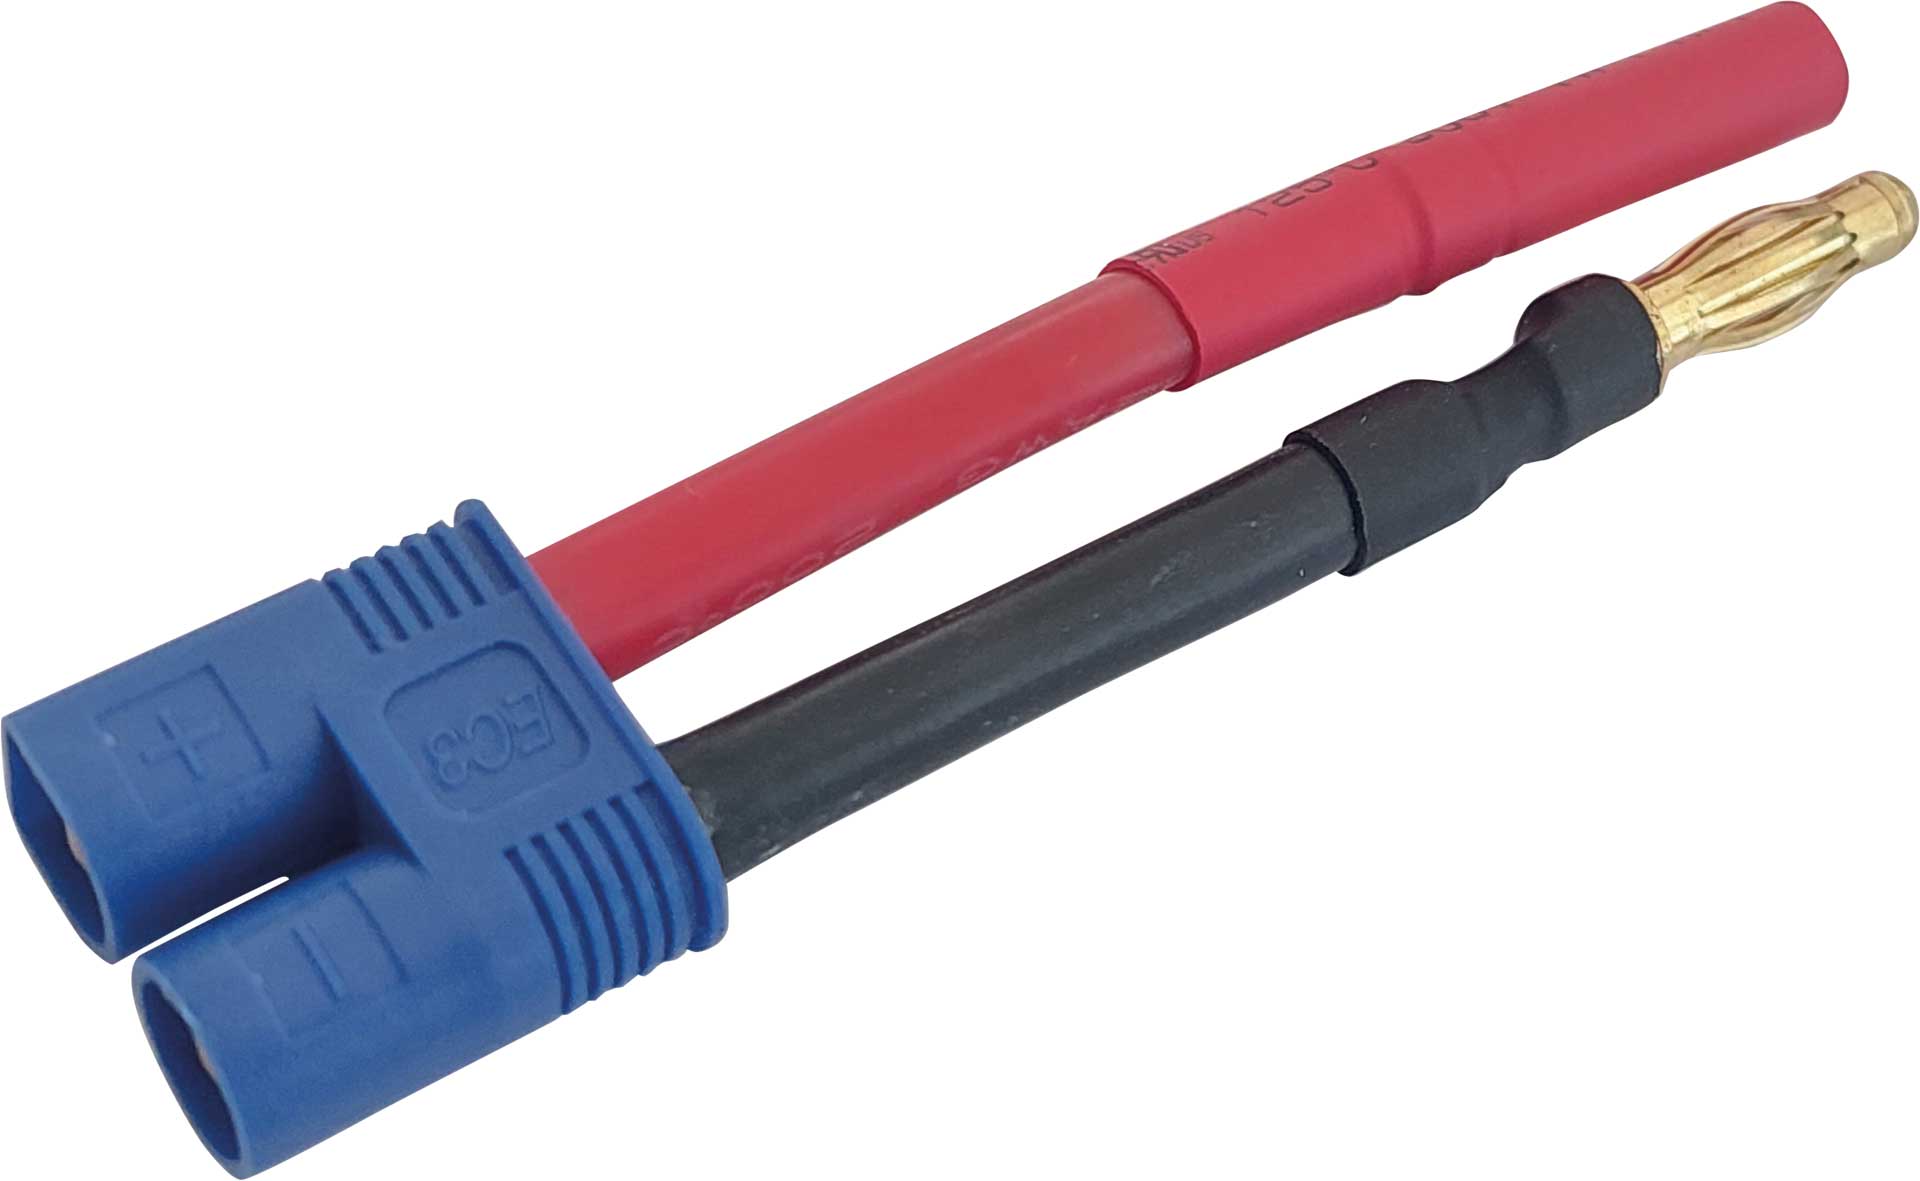 PLANET-HOBBY Câble adaptateur EC-3 mâle vers 4mm Contact or (femelle = rouge) 1pc.